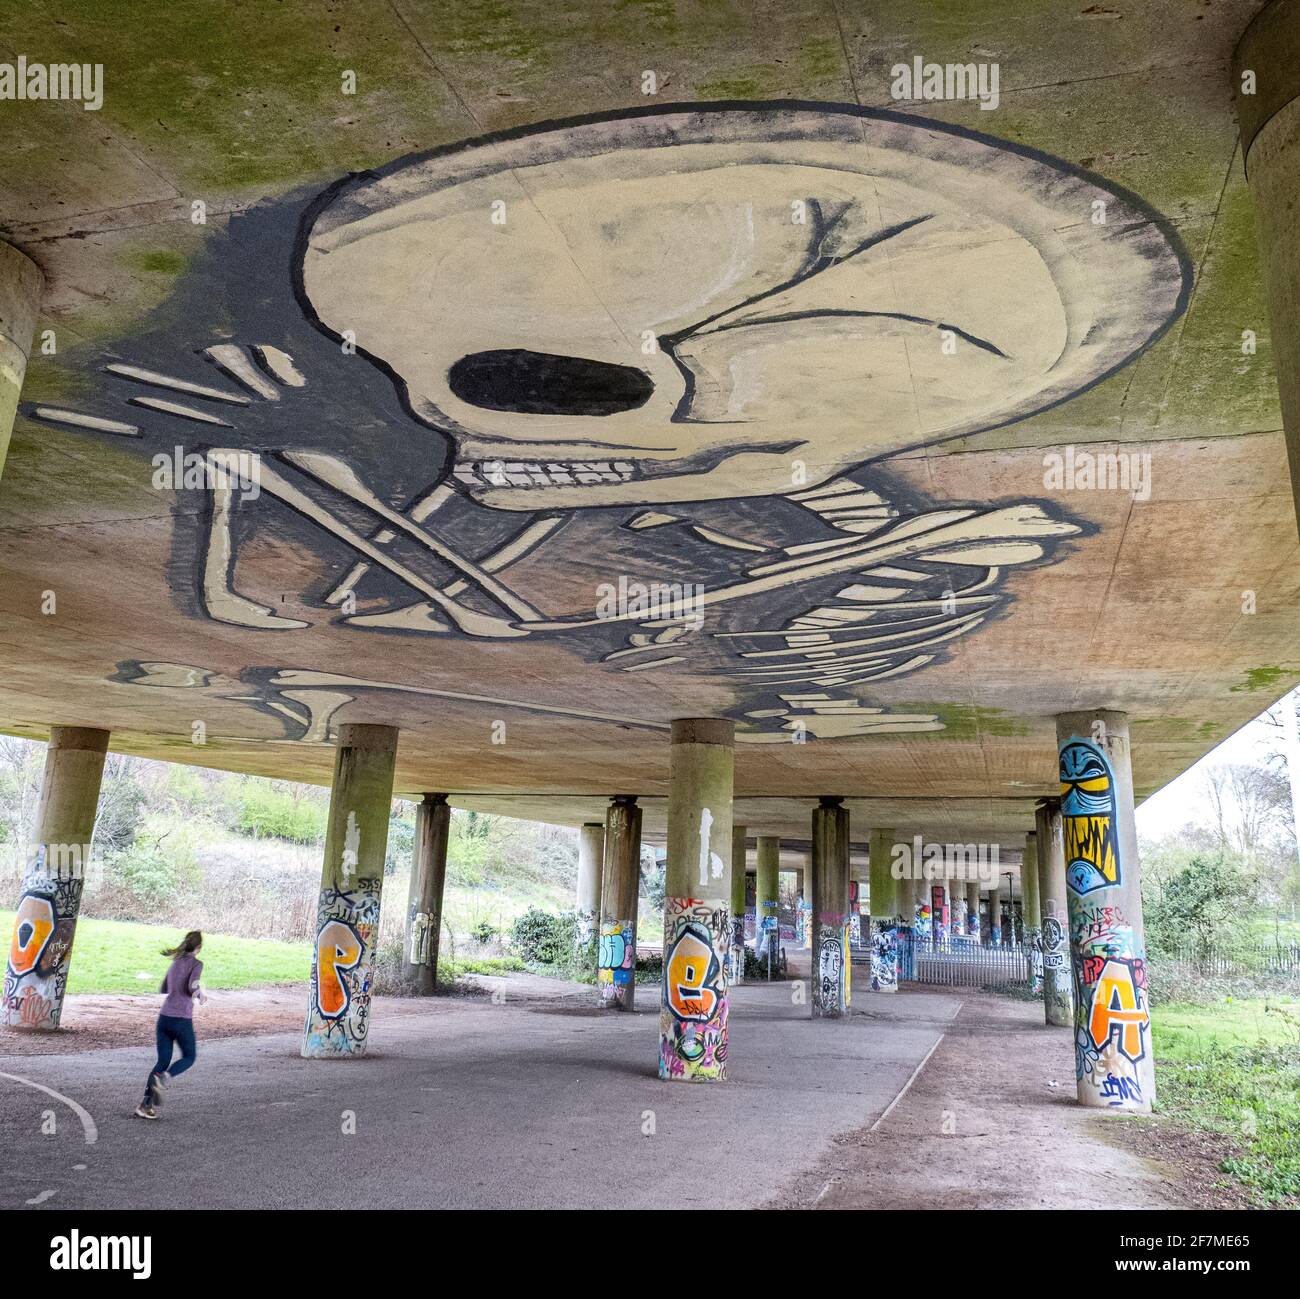 Die Überführung im Cumberland Basin in Bristol in Großbritannien ist ein beliebtes Ausflugsgebiet Website für Graffiti-Künstler, die jeden verfügbaren Raum genutzt haben Stockfoto